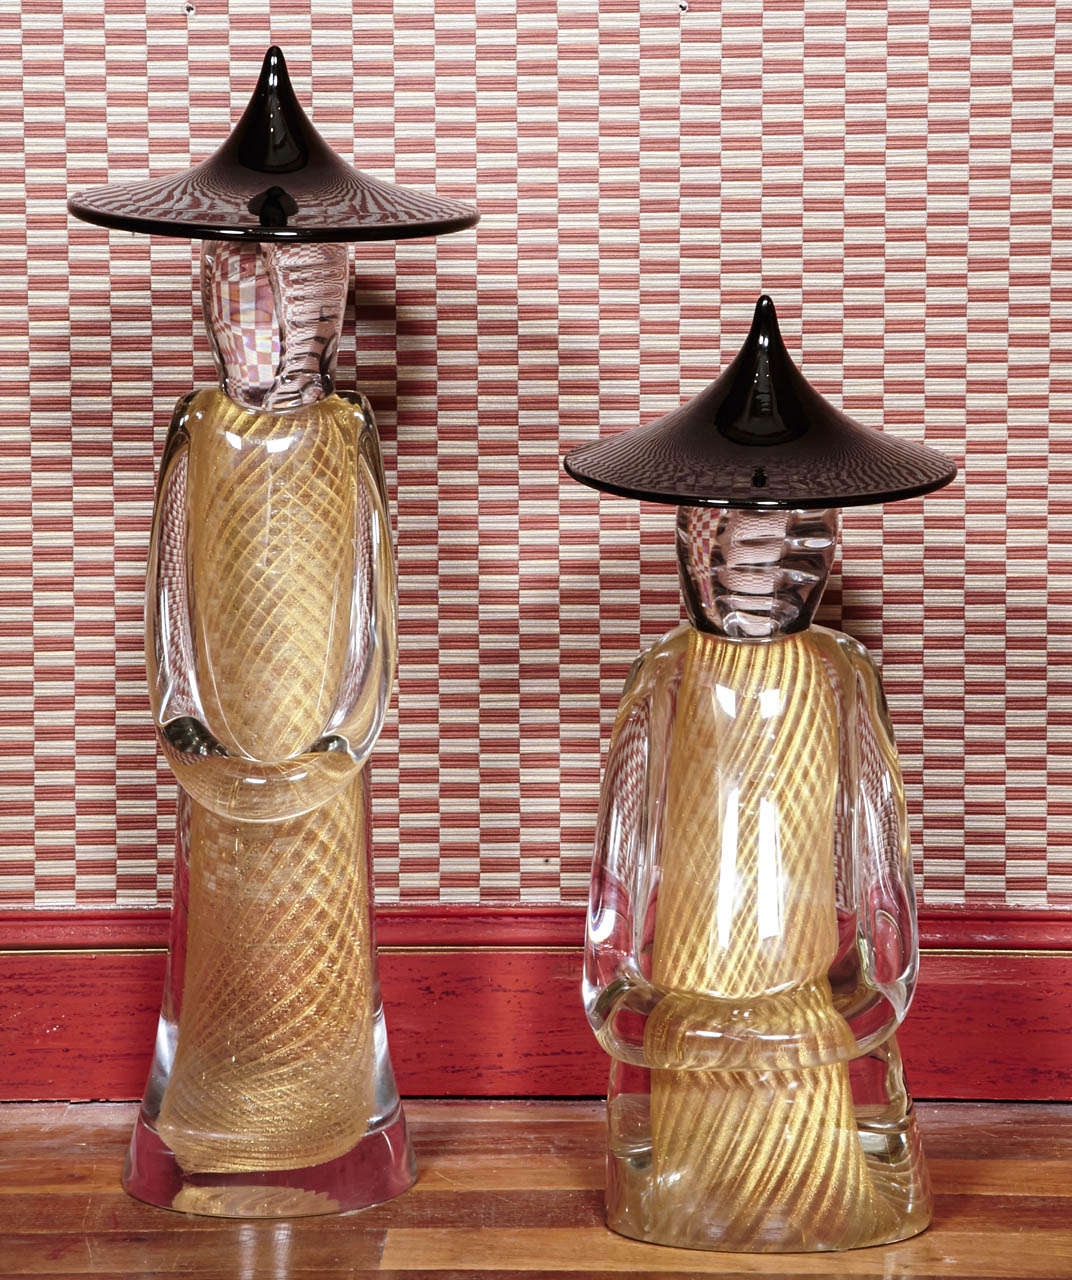 Pair of Murano glass figures, Chinese spirit